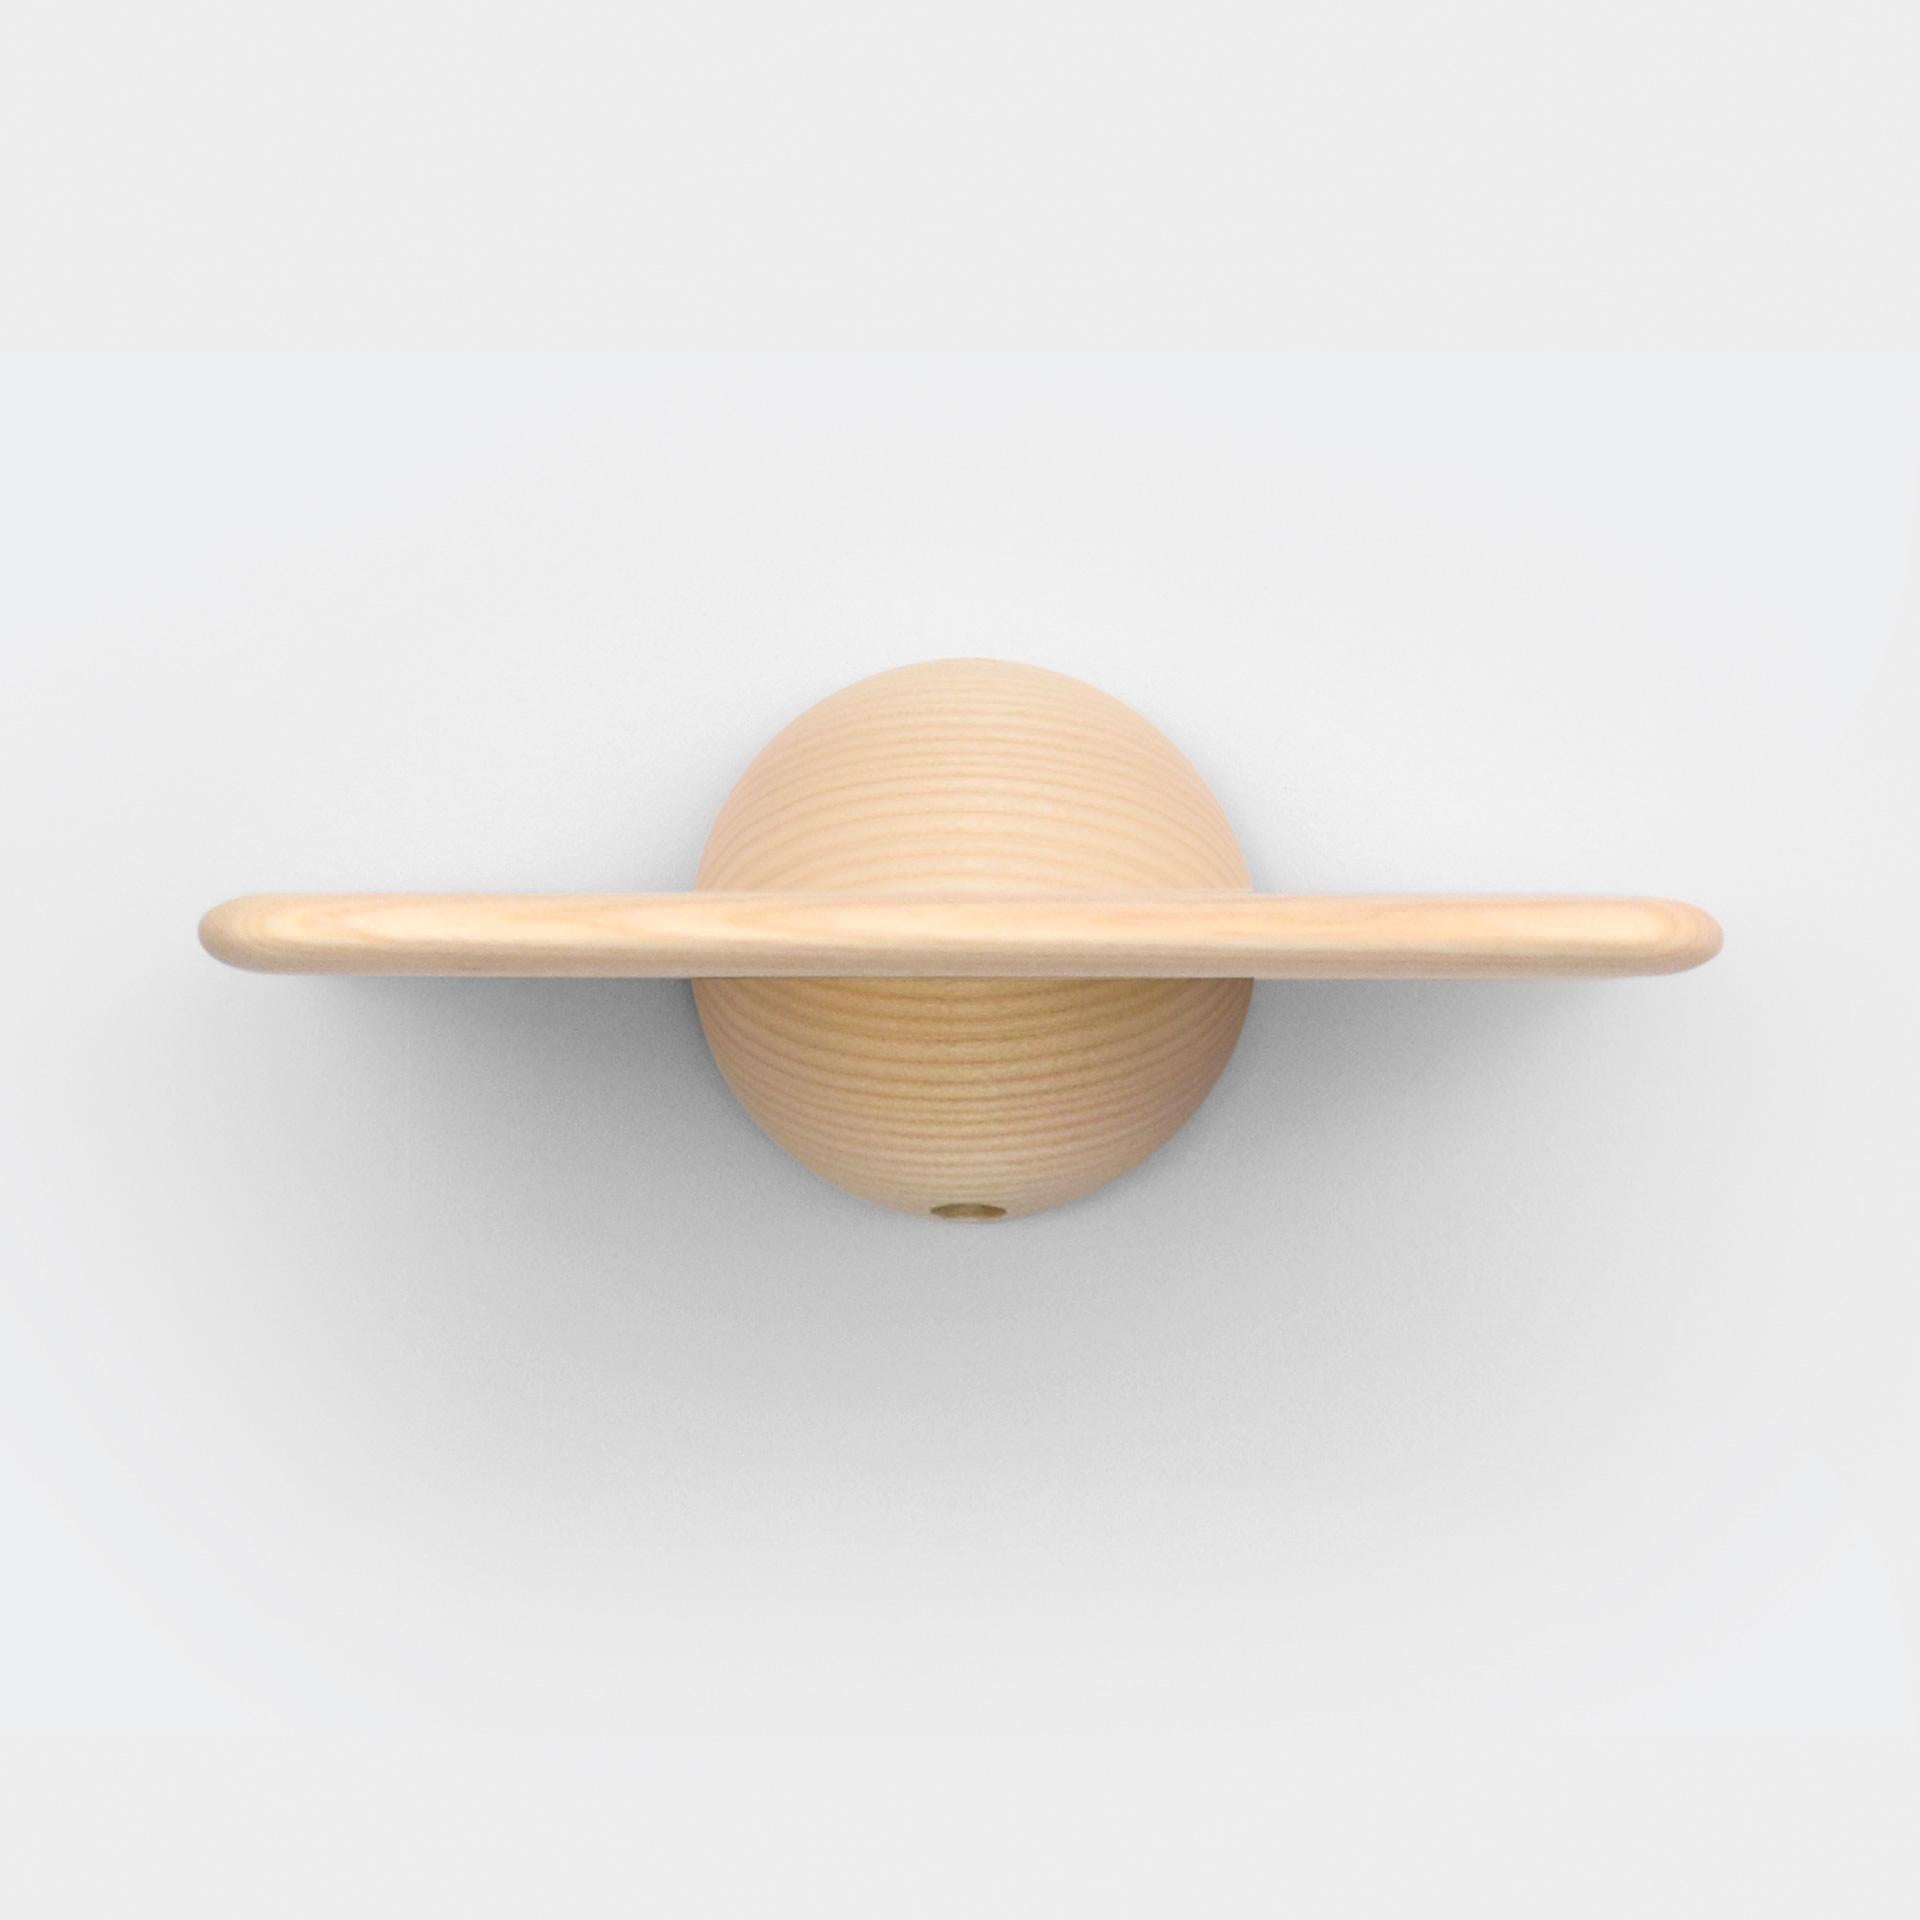 La demi-sphère qui tient l'avion contribue à un look audacieux mais minimal qui convient à différents espaces et environnements. Qu'elle soit utilisée comme étagère pour un objet extraordinaire, comme table de chevet ou comme petite table de bar,